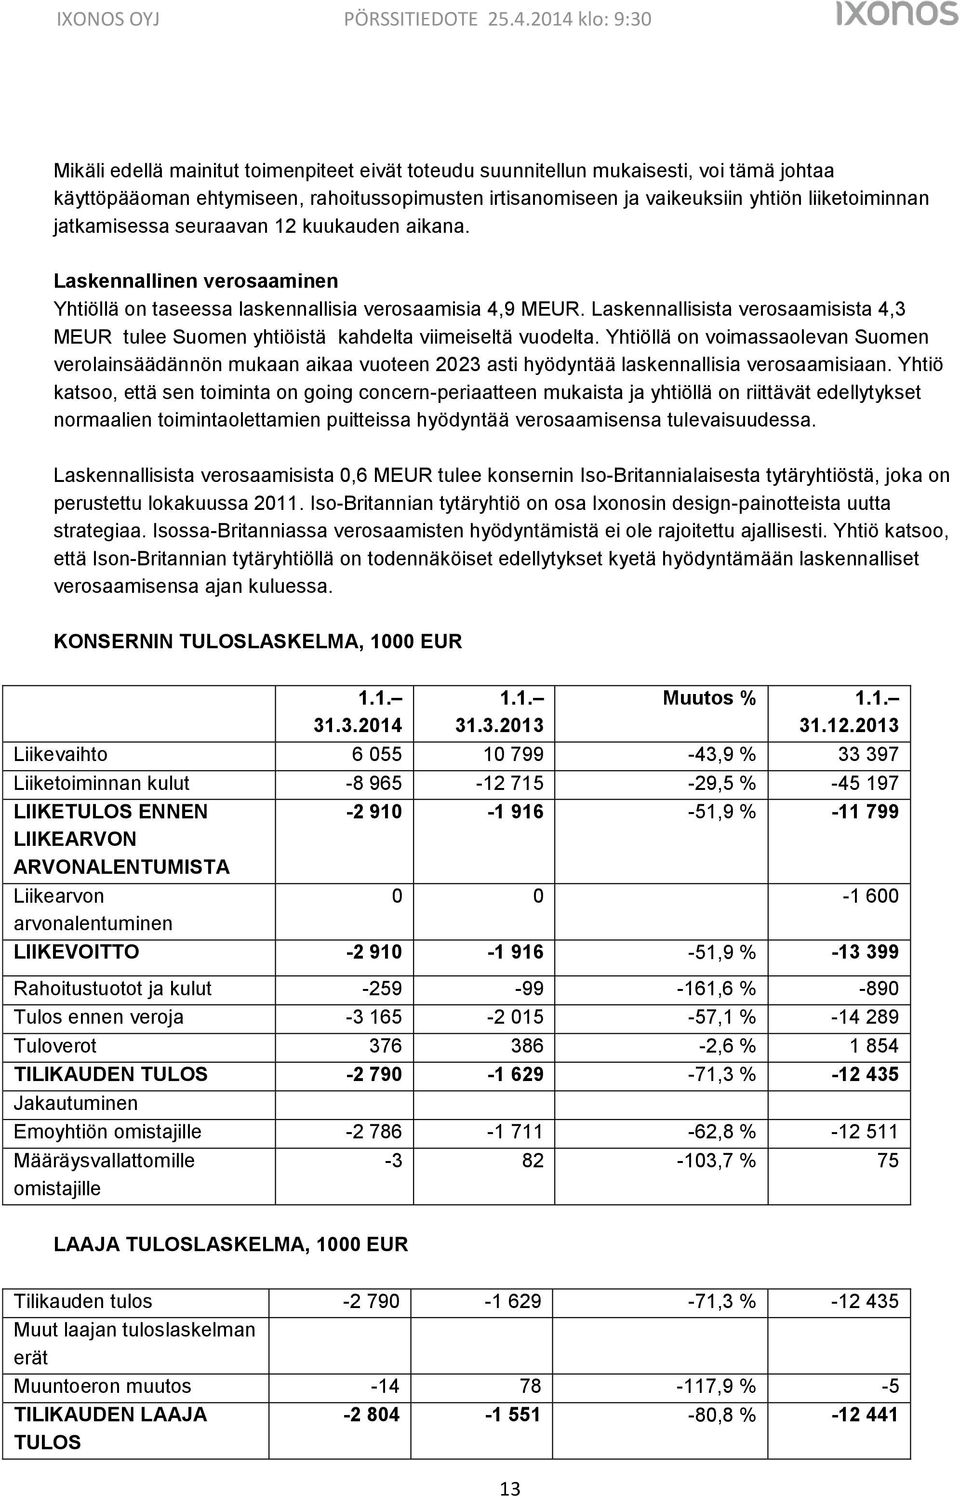 Laskennallisista verosaamisista 4,3 MEUR tulee Suomen yhtiöistä kahdelta viimeiseltä vuodelta.